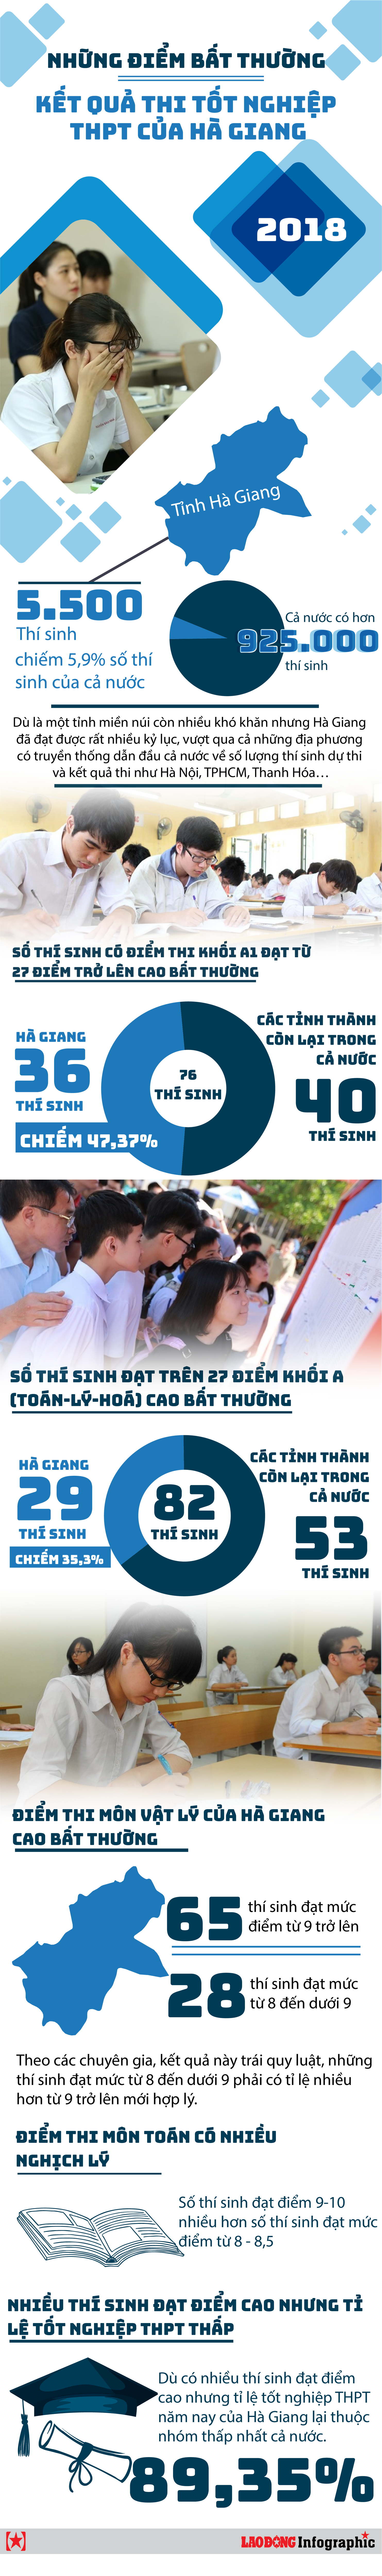 Infographic: Những điểm bất thường trong điểm thi THPT quốc gia của Hà Giang. Thiết kế: Văn Thắng